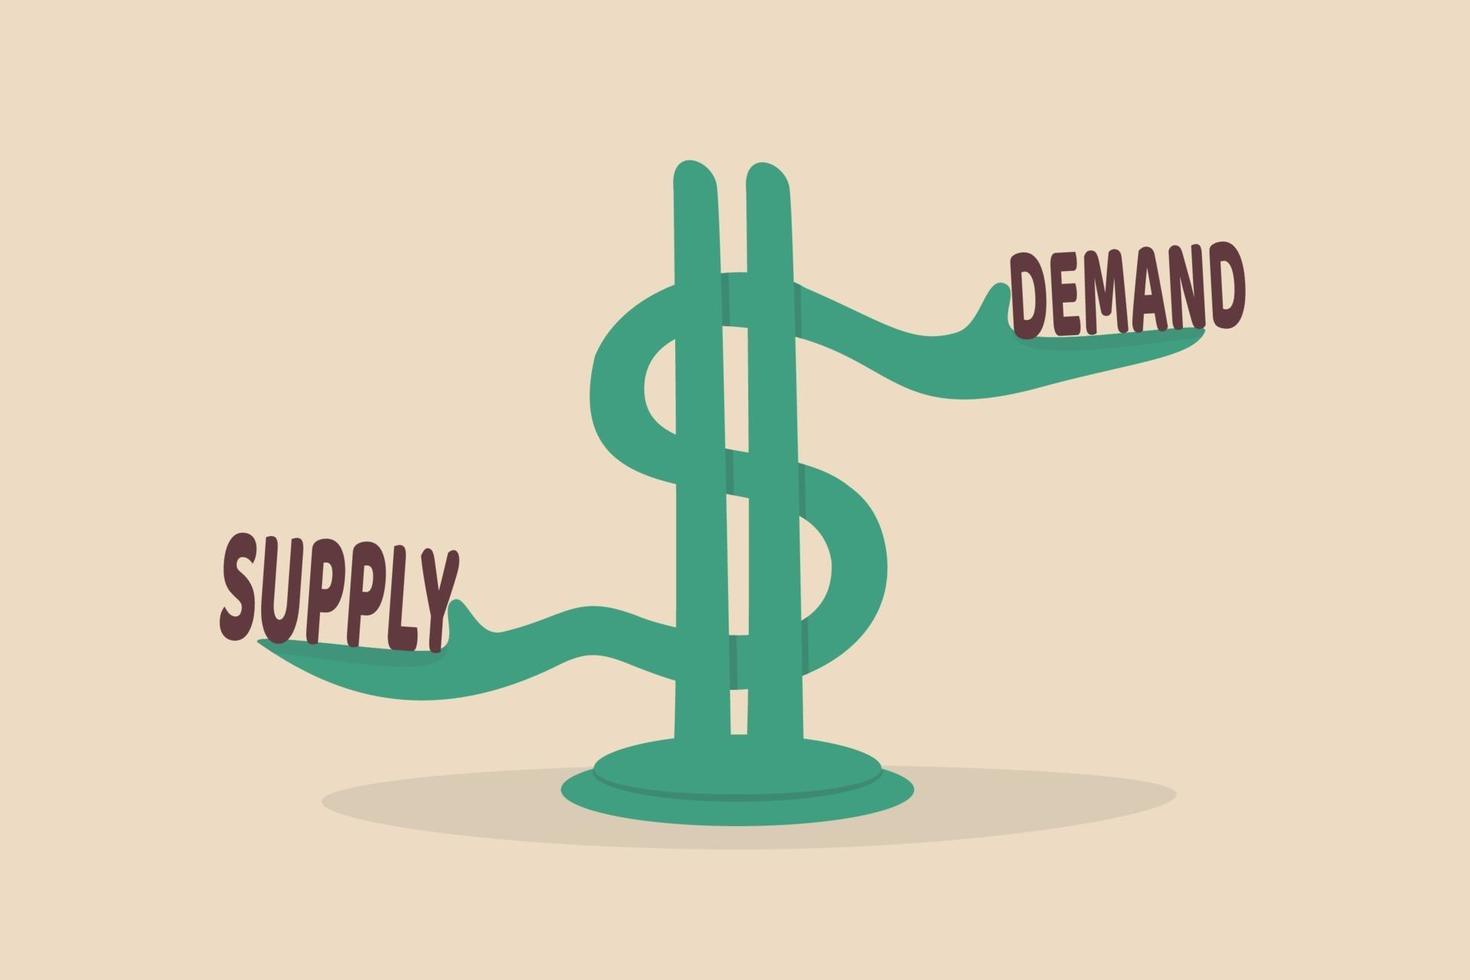 demande et offre, modèle économique de détermination des prix dans un concept de marché des capitaux vecteur